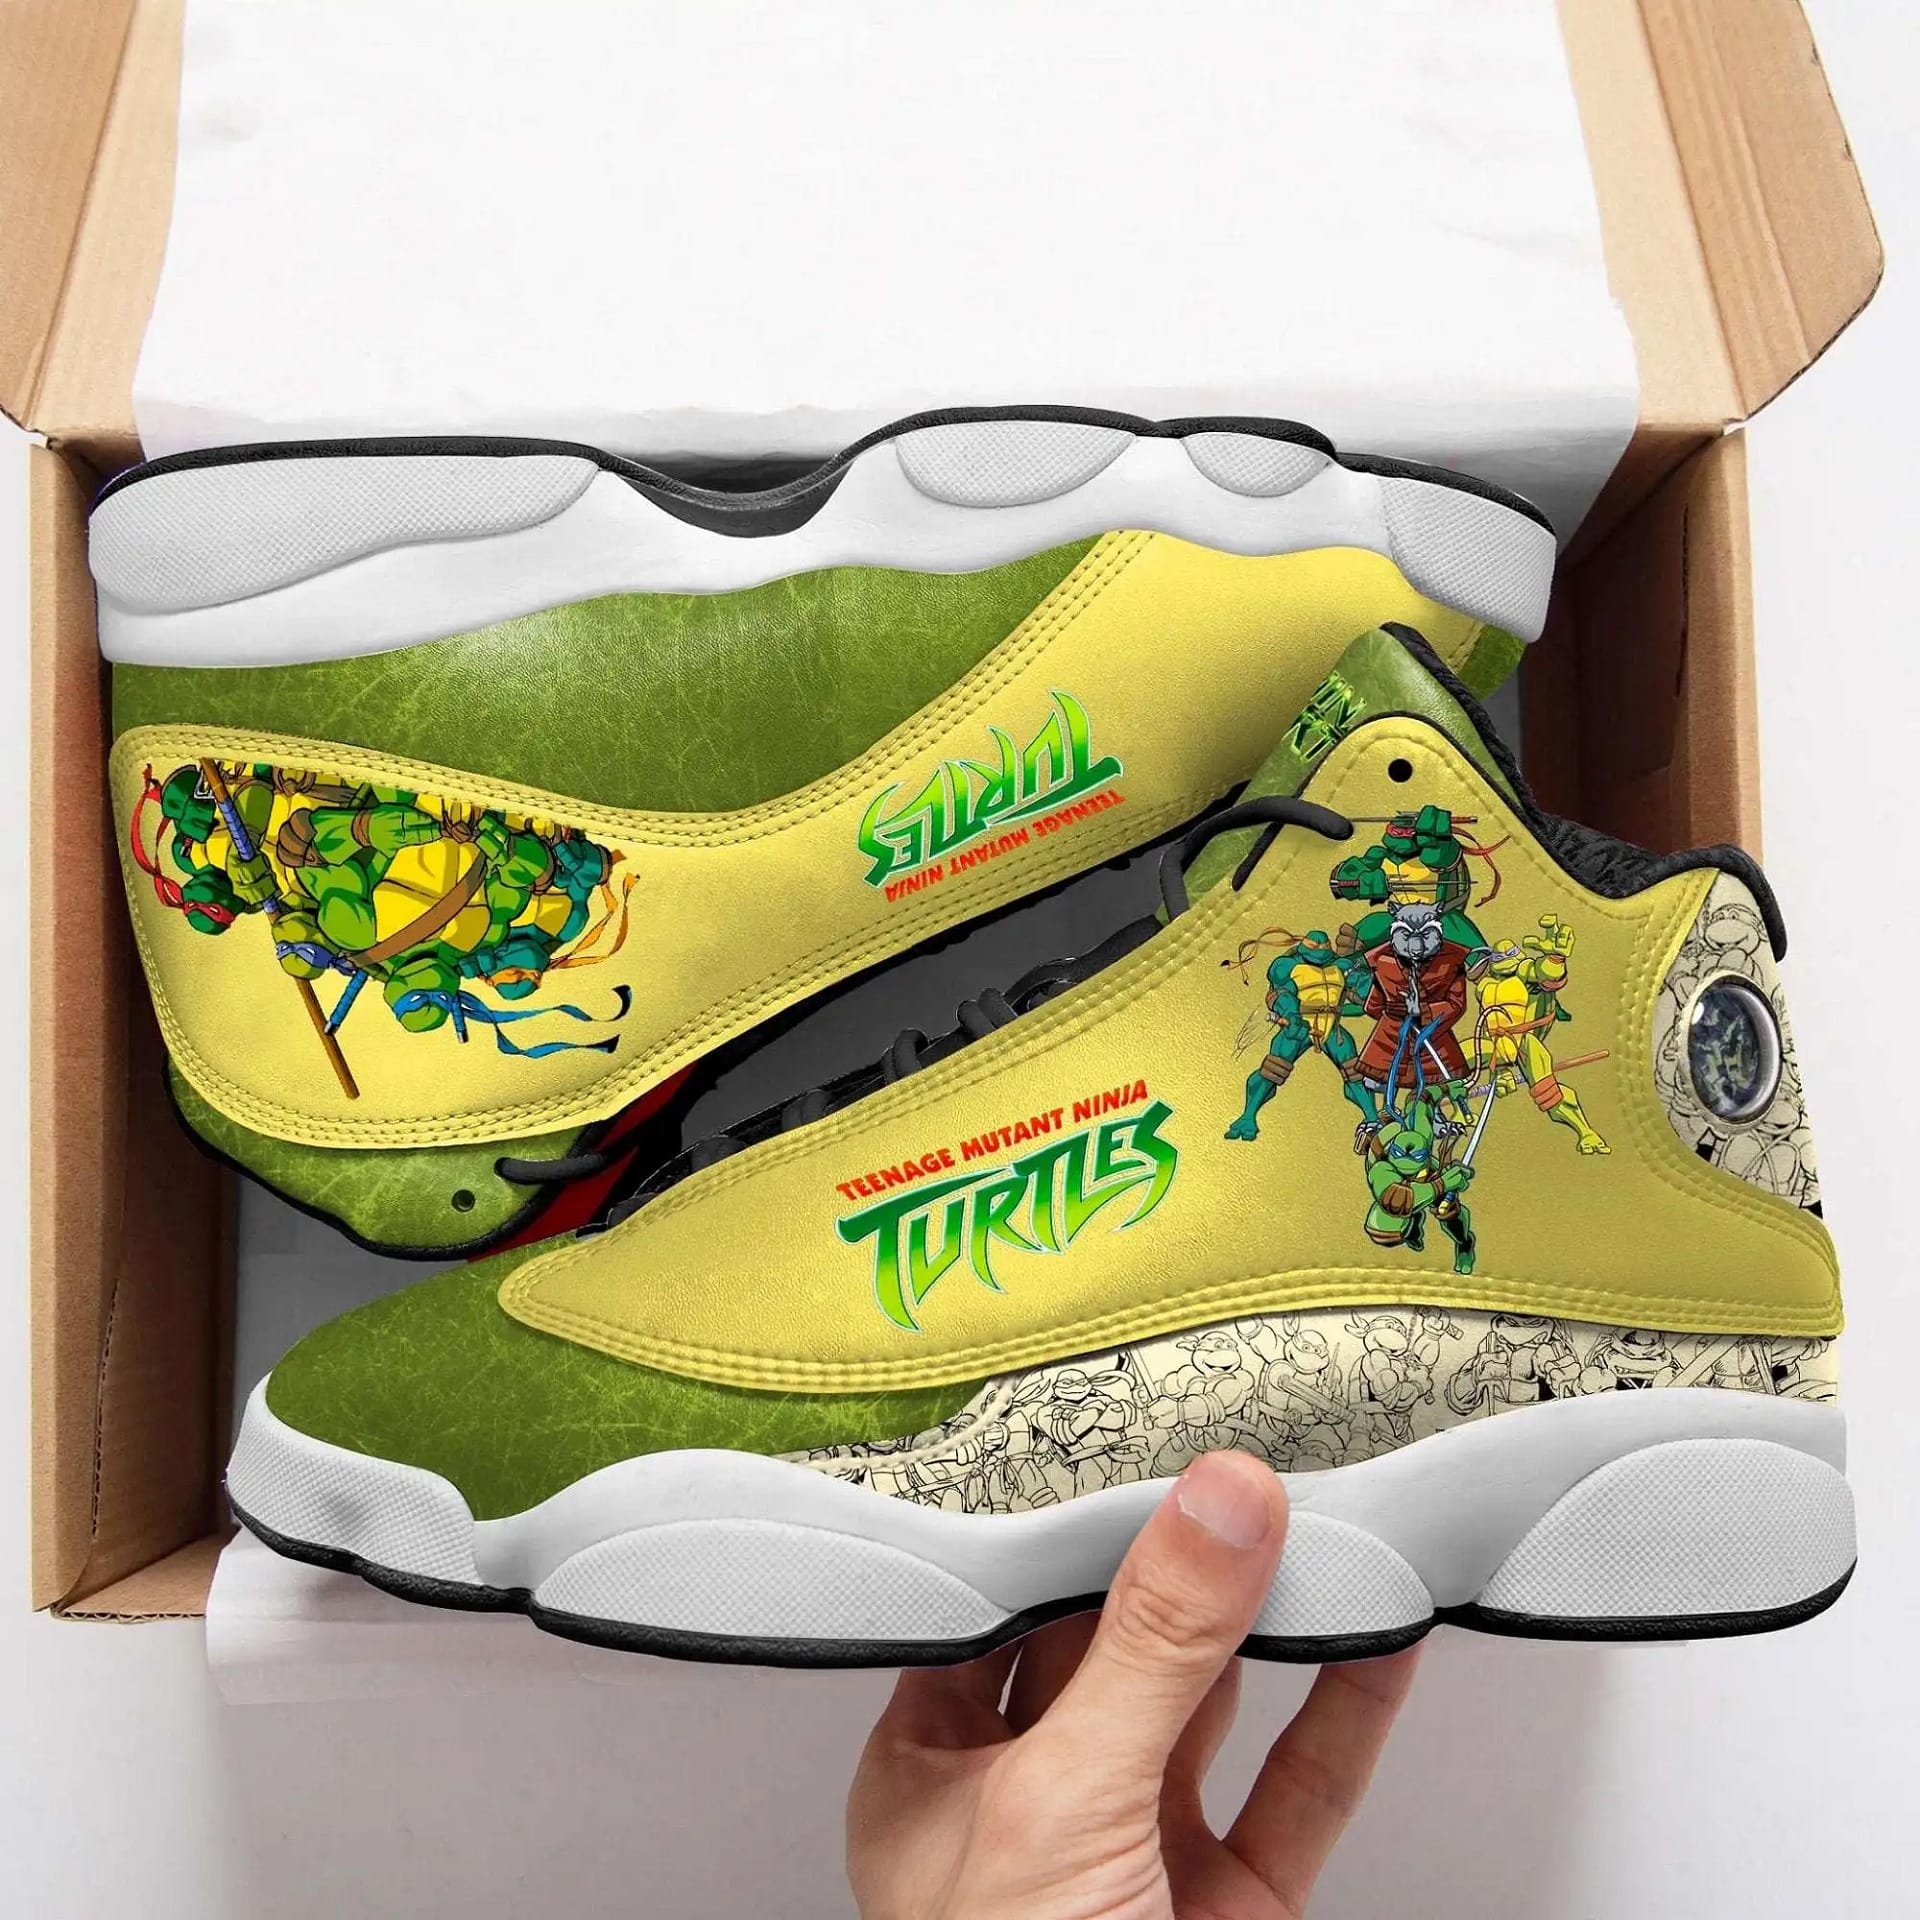 Ninja Turtles Air Jordan Shoes